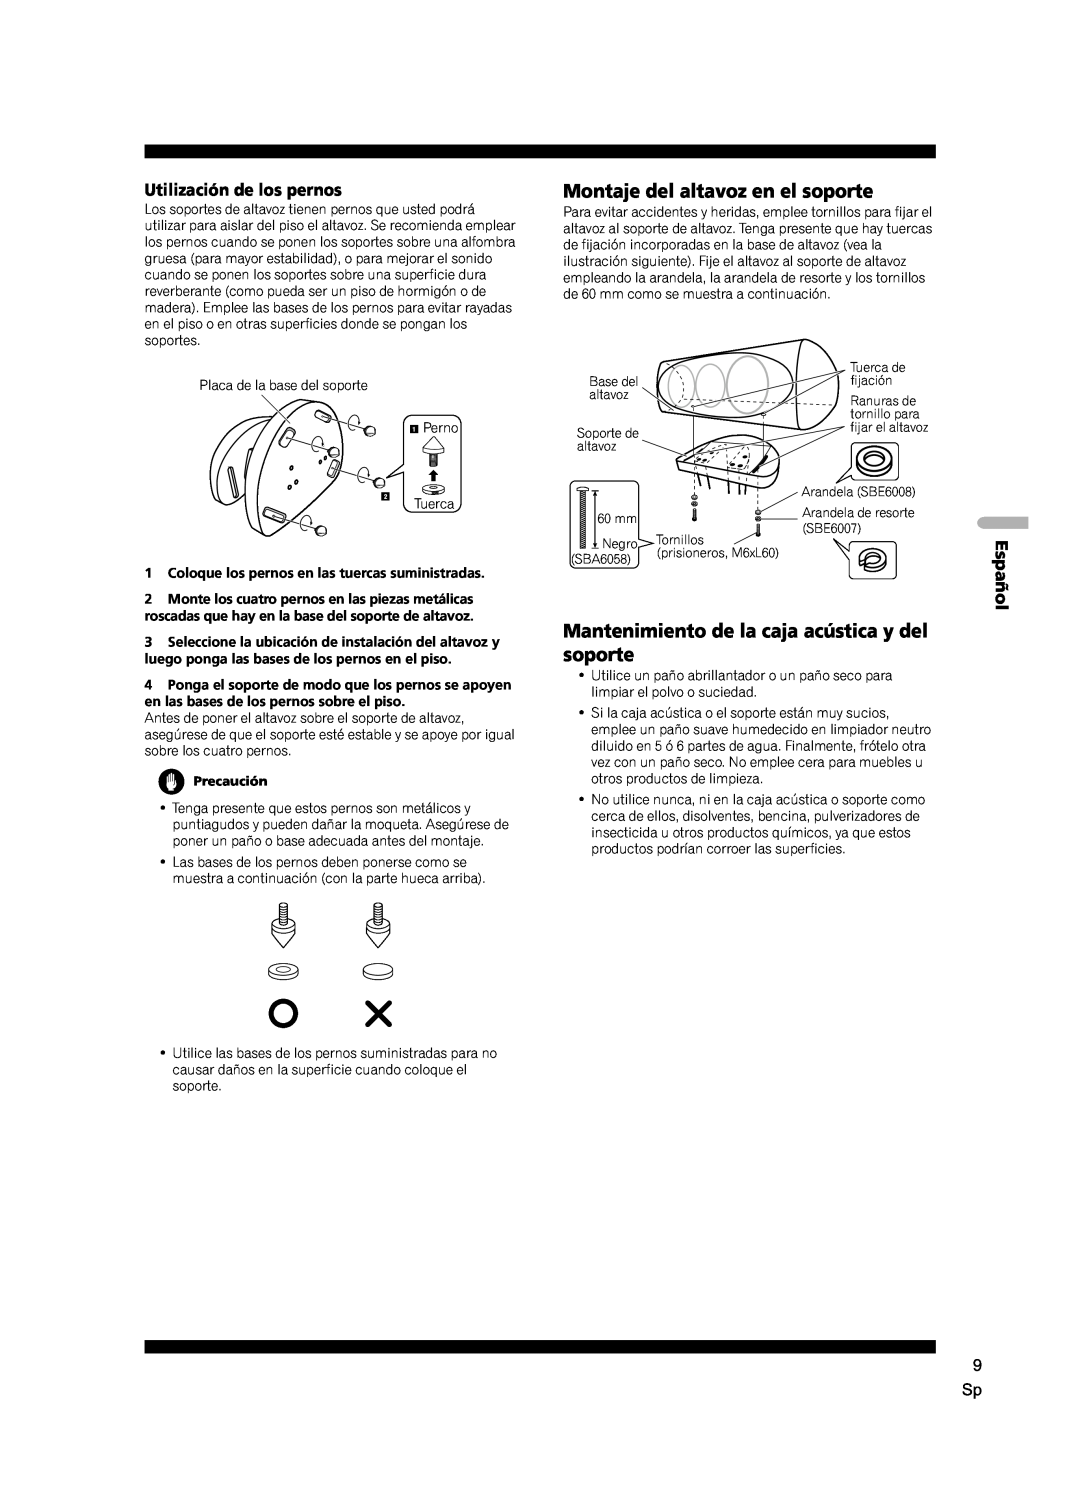 Pioneer CP-7EX manual Montaje del altavoz en el soporte, Mantenimiento de la caja acústica y del soporte, Espa, Precaución 